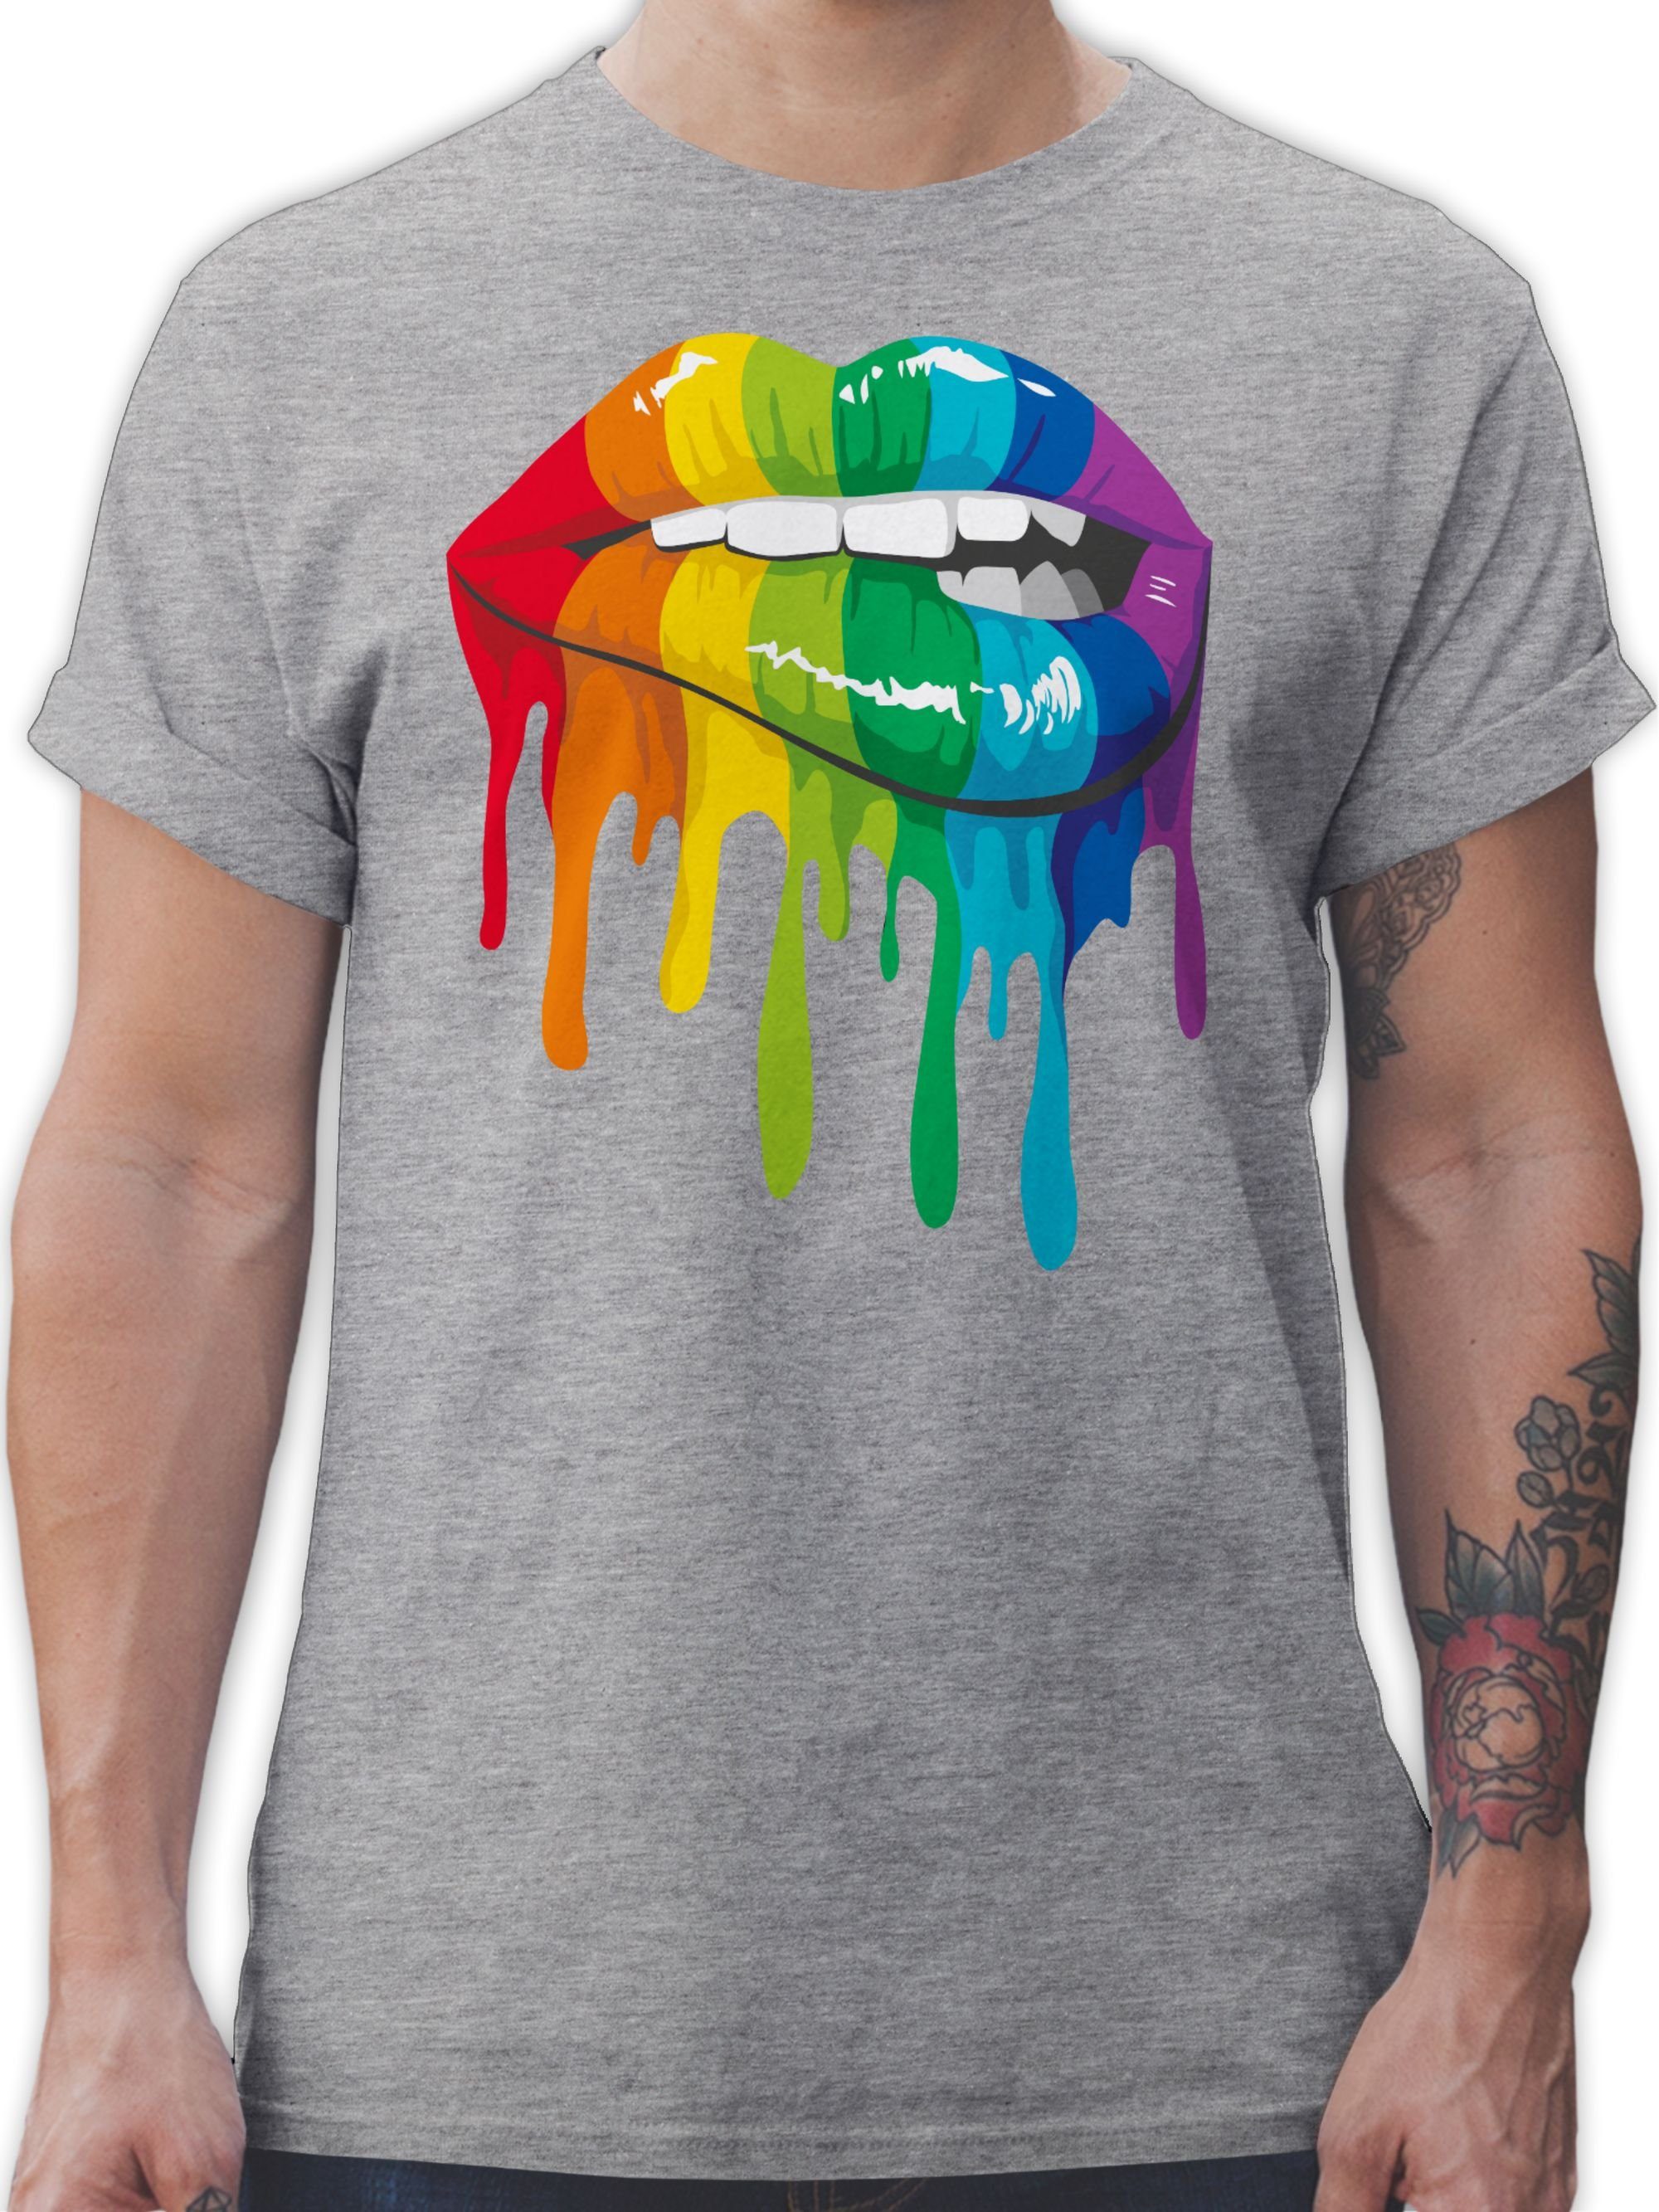 LGBTQ T-Shirt 3 Lippen meliert Shirtracer & Grau LGBT Kleidung LGBT